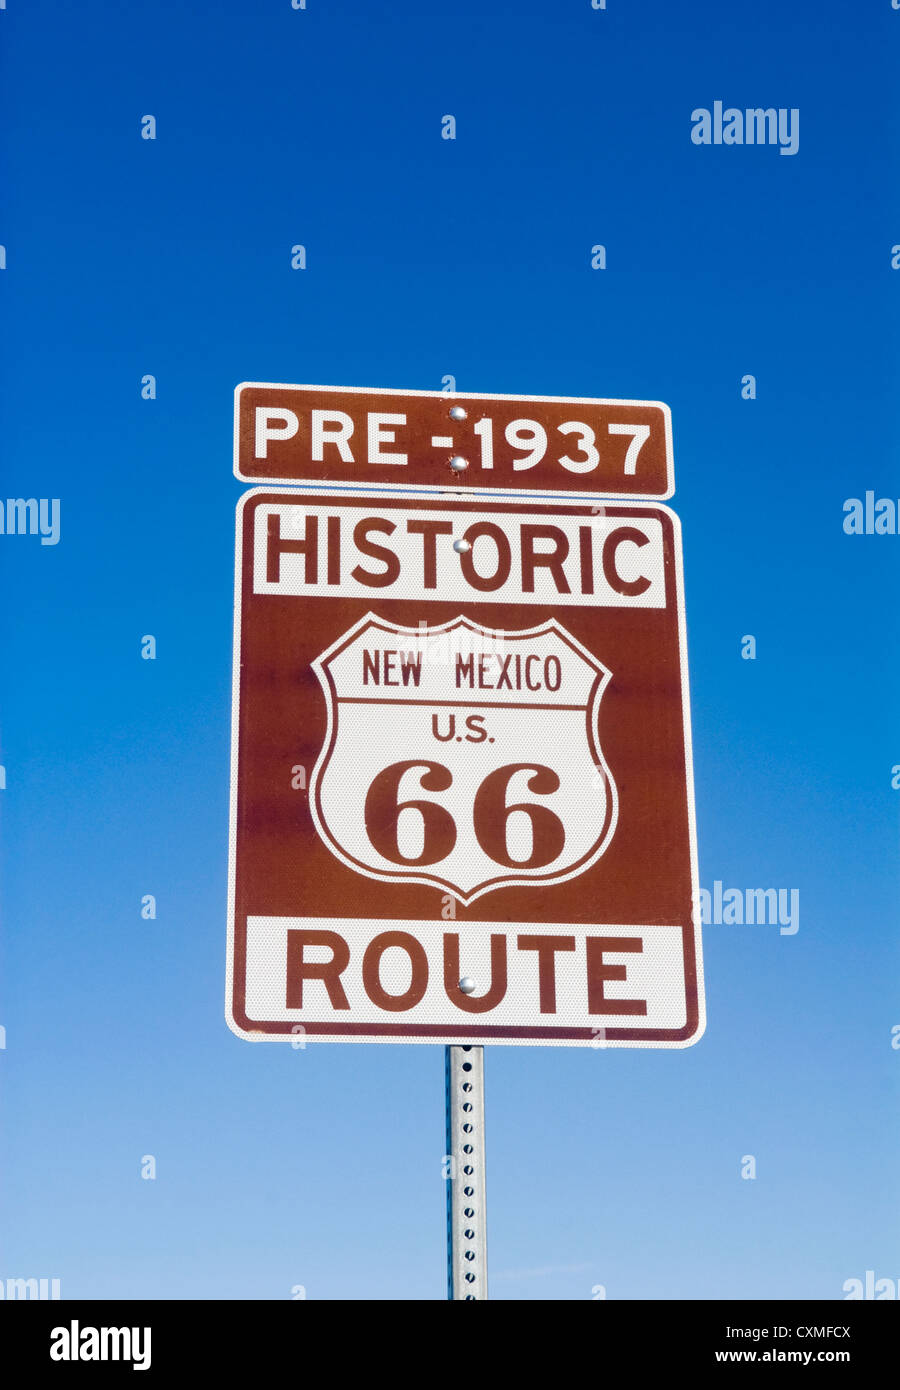 Schild mit dem historischen Pre 1937 Route 66 in New Mexiko Stockfoto